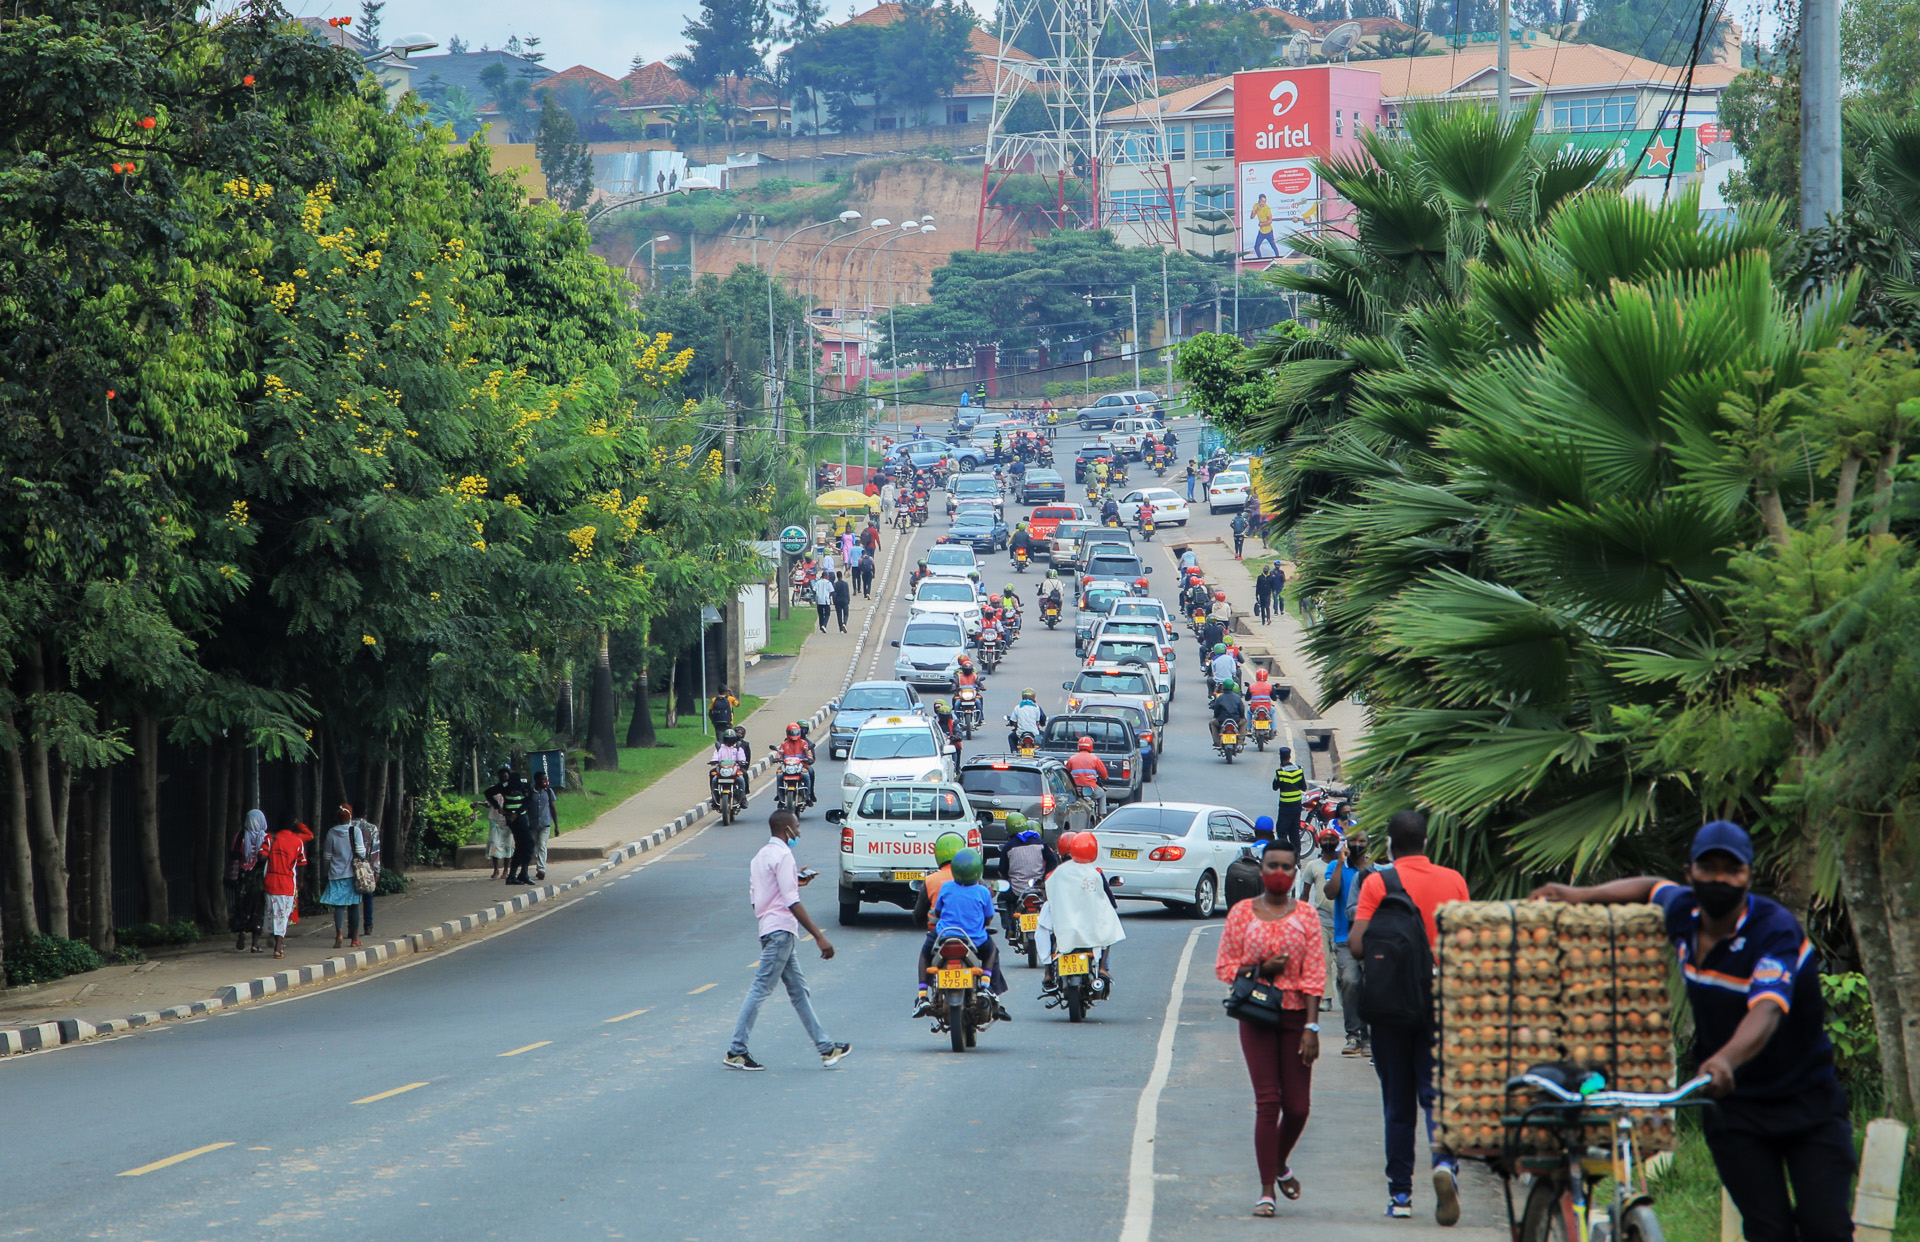 A busy Nyarutarama street in Kigali. |Dan Nsengiyumva